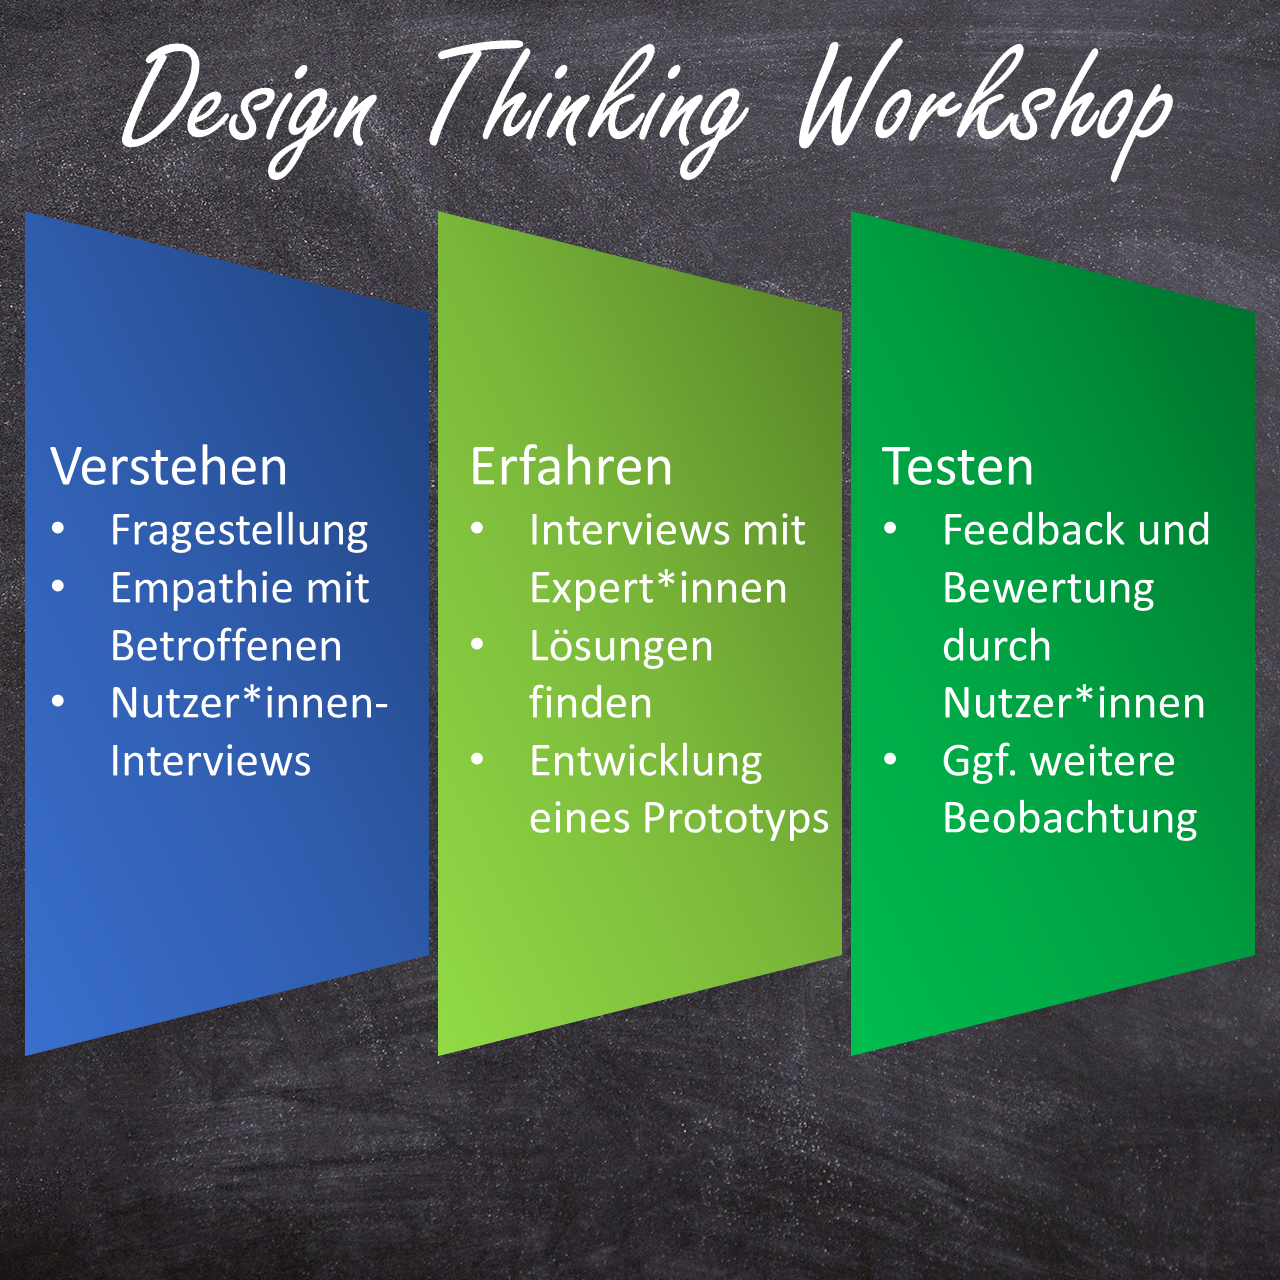 Bild über die Struktur vom DesignThinking Workshop.